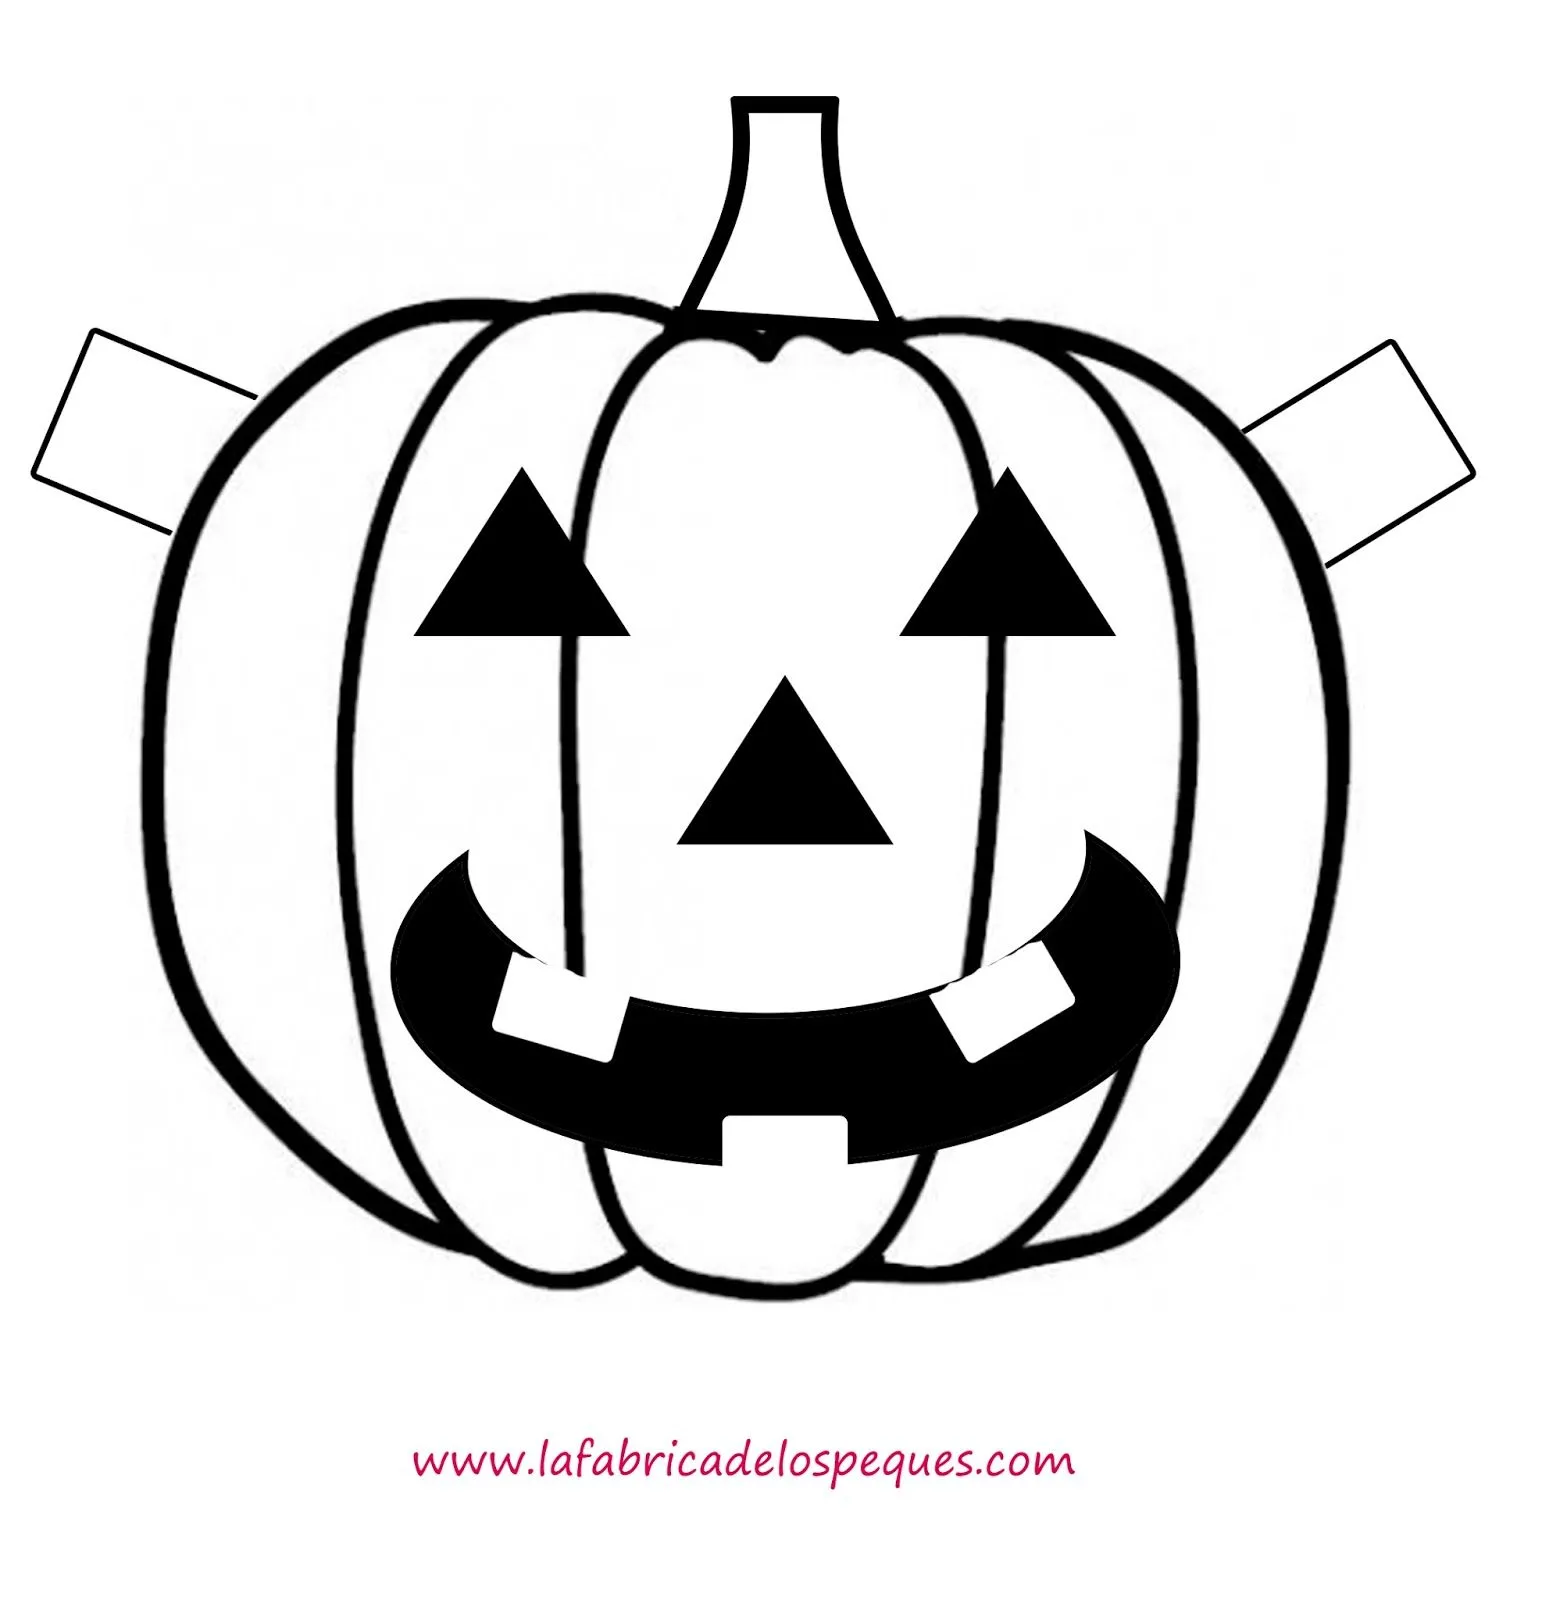 Plantillas e imprimibles gratis para Halloween: calaveras, calabazas y  fantasmas. - La fábrica de los peques